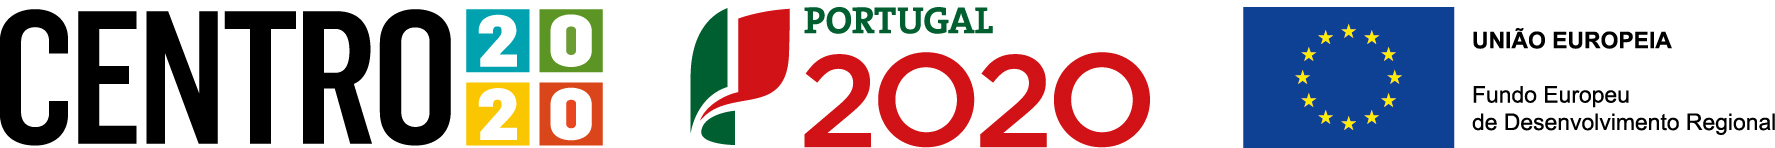 Projecto Cofinanciado por: Centro2020 - Portugal 2020 - União Europeia